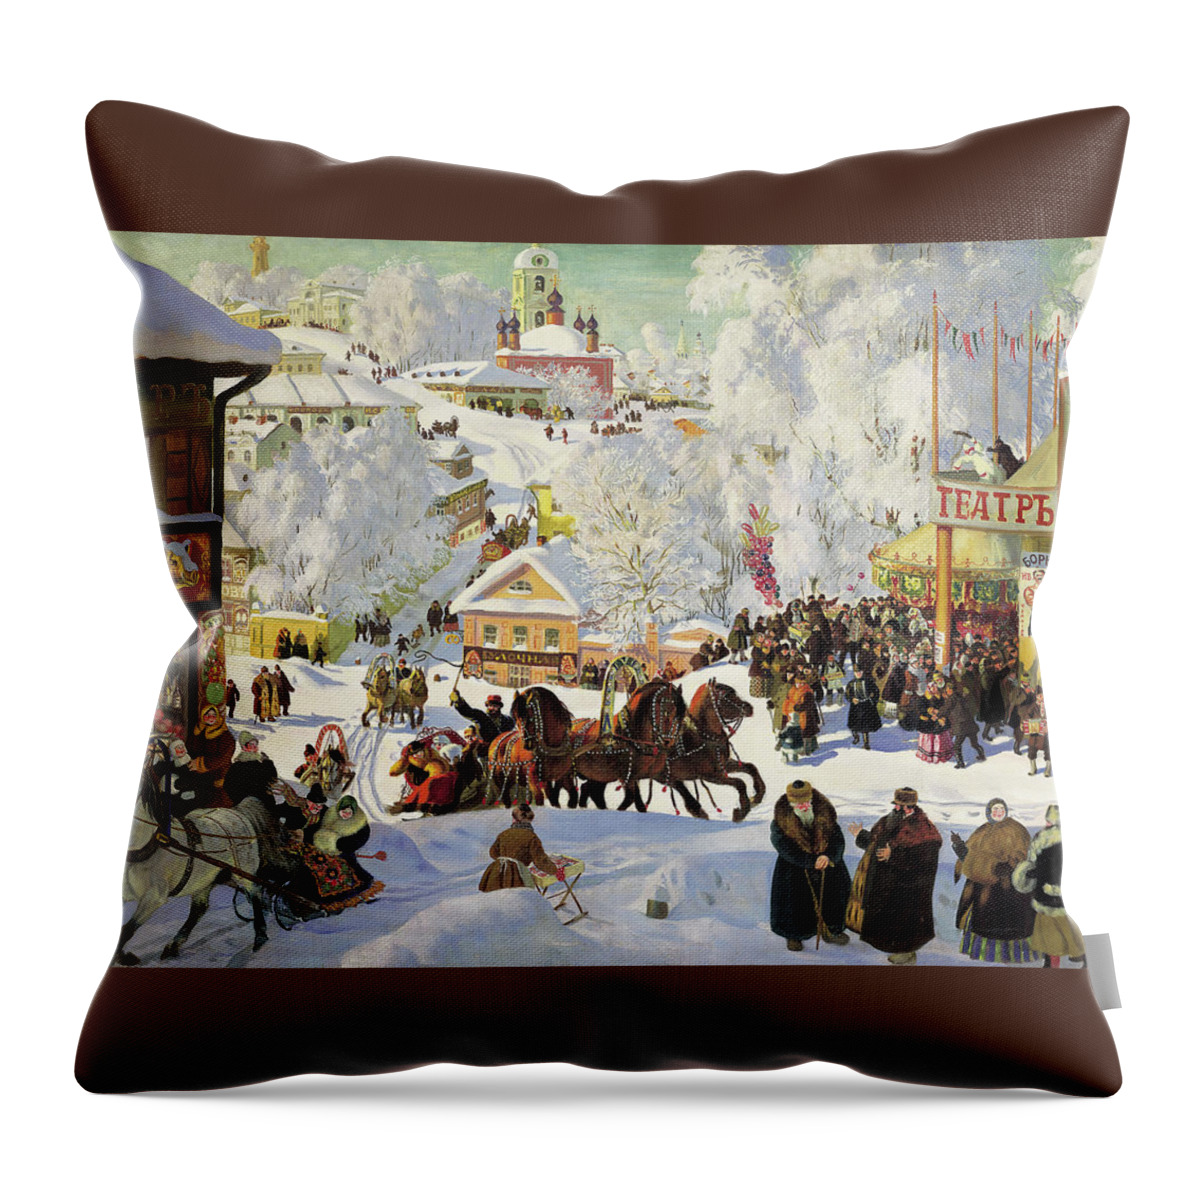 Maslenitsa Throw Pillow featuring the painting Maslenitsa by Boris Kustodiev